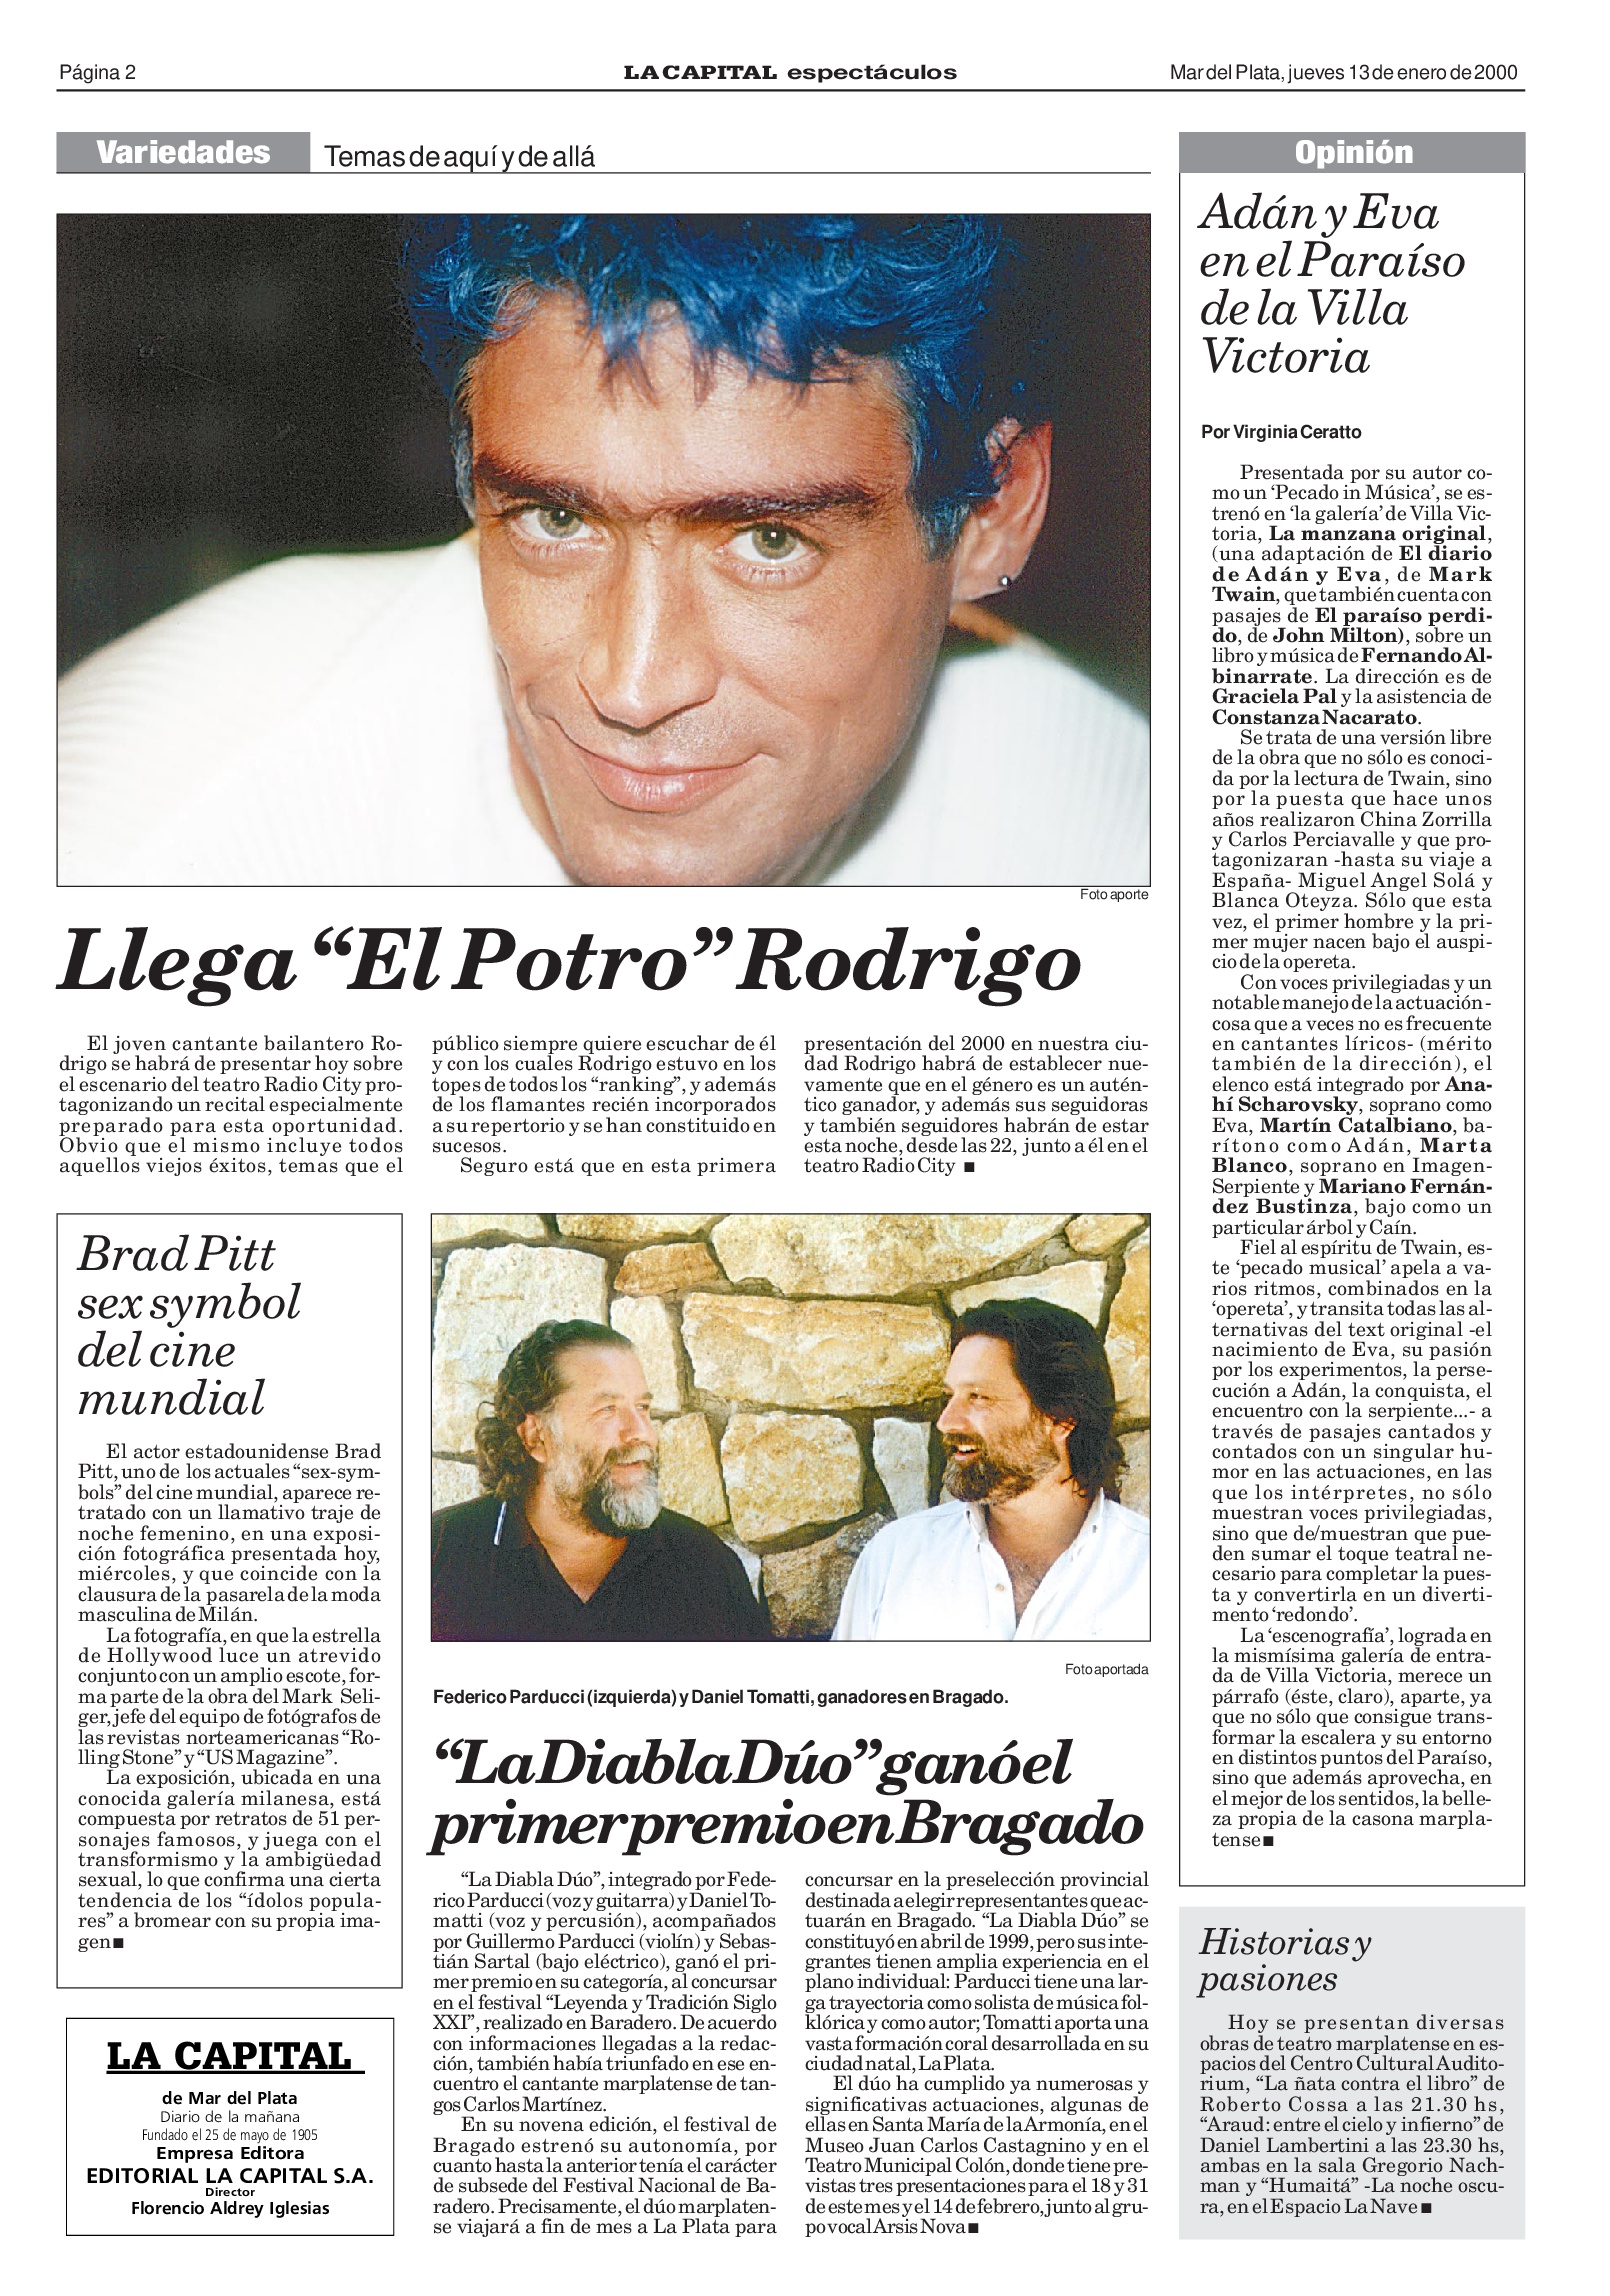 "Llega 'El Potro' Rodrigo", anunció LA CAPITAL una de las presentaciones en el Radio City.